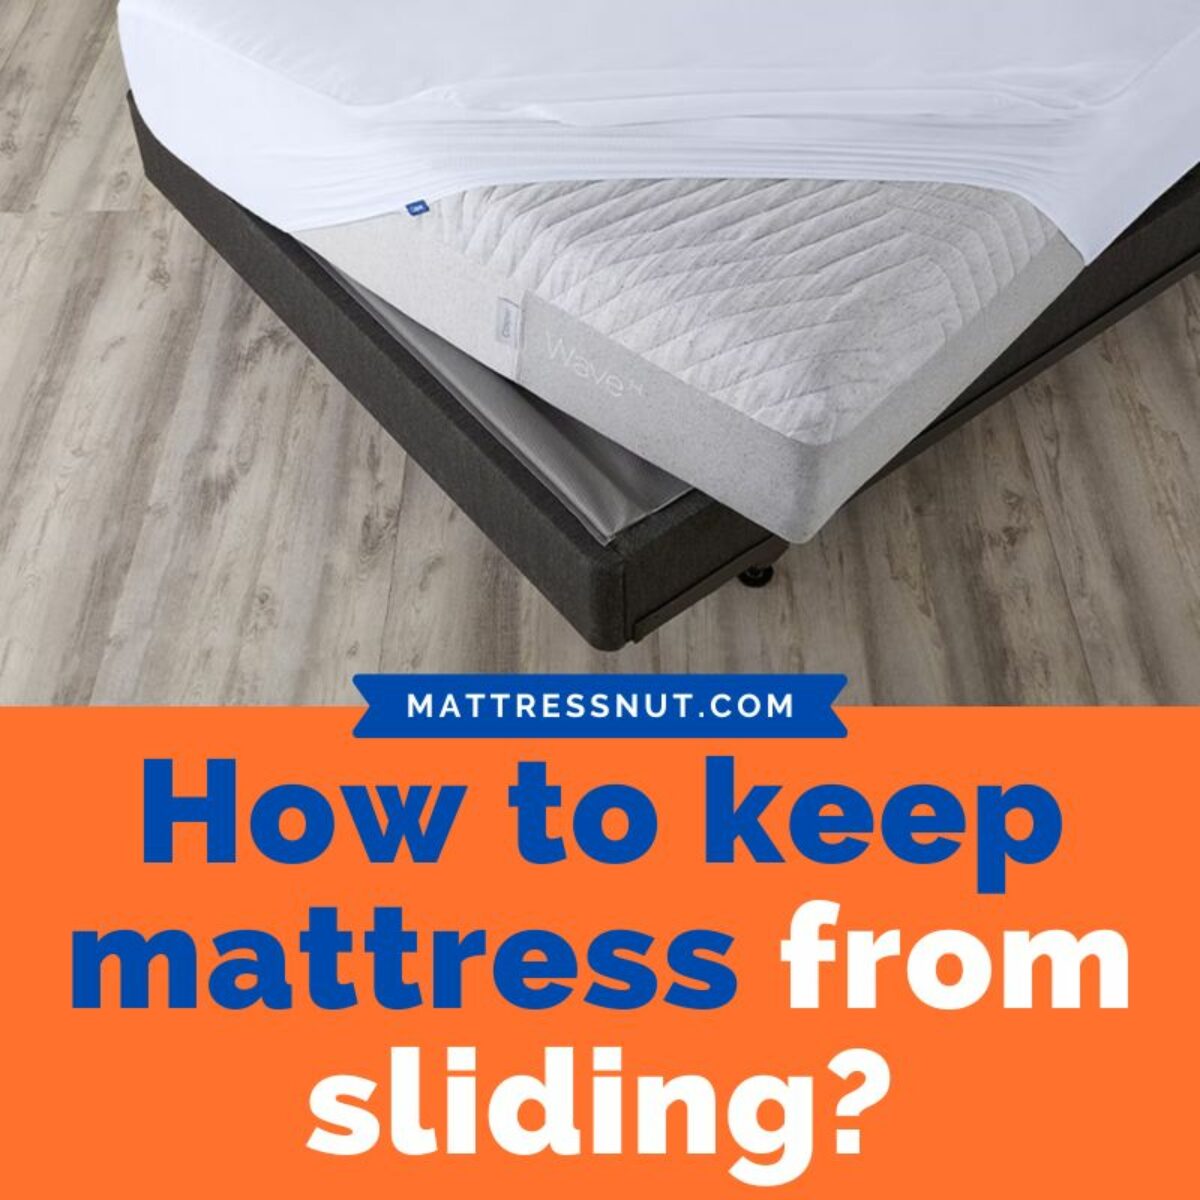 https://www.mattressnut.com/wp-content/uploads/2022/08/how-to-keep-mattress-from-sliding-1200x1200.jpg